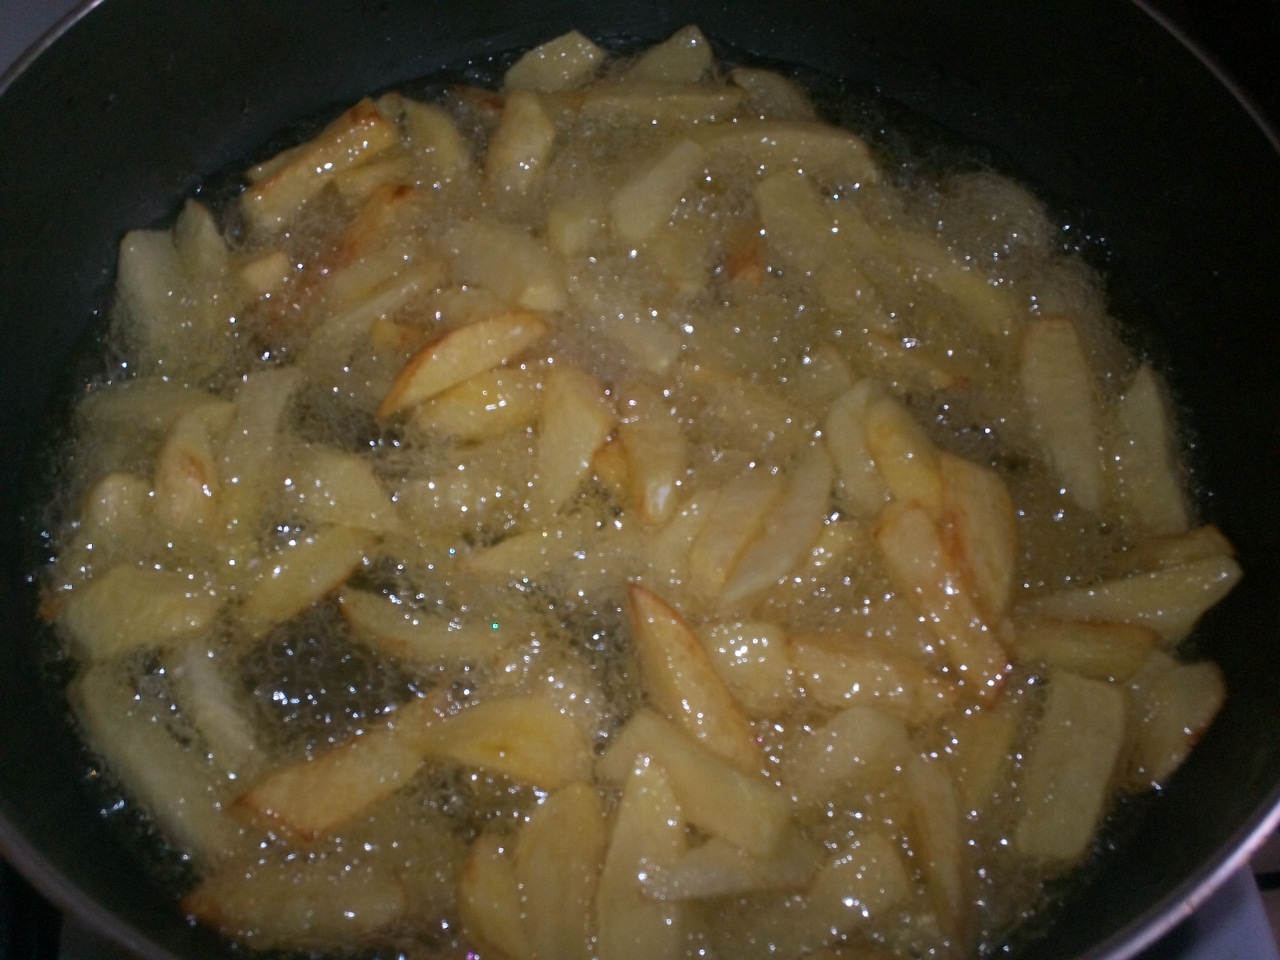 Cartofi prajiti cu carnati si salata de castraveti